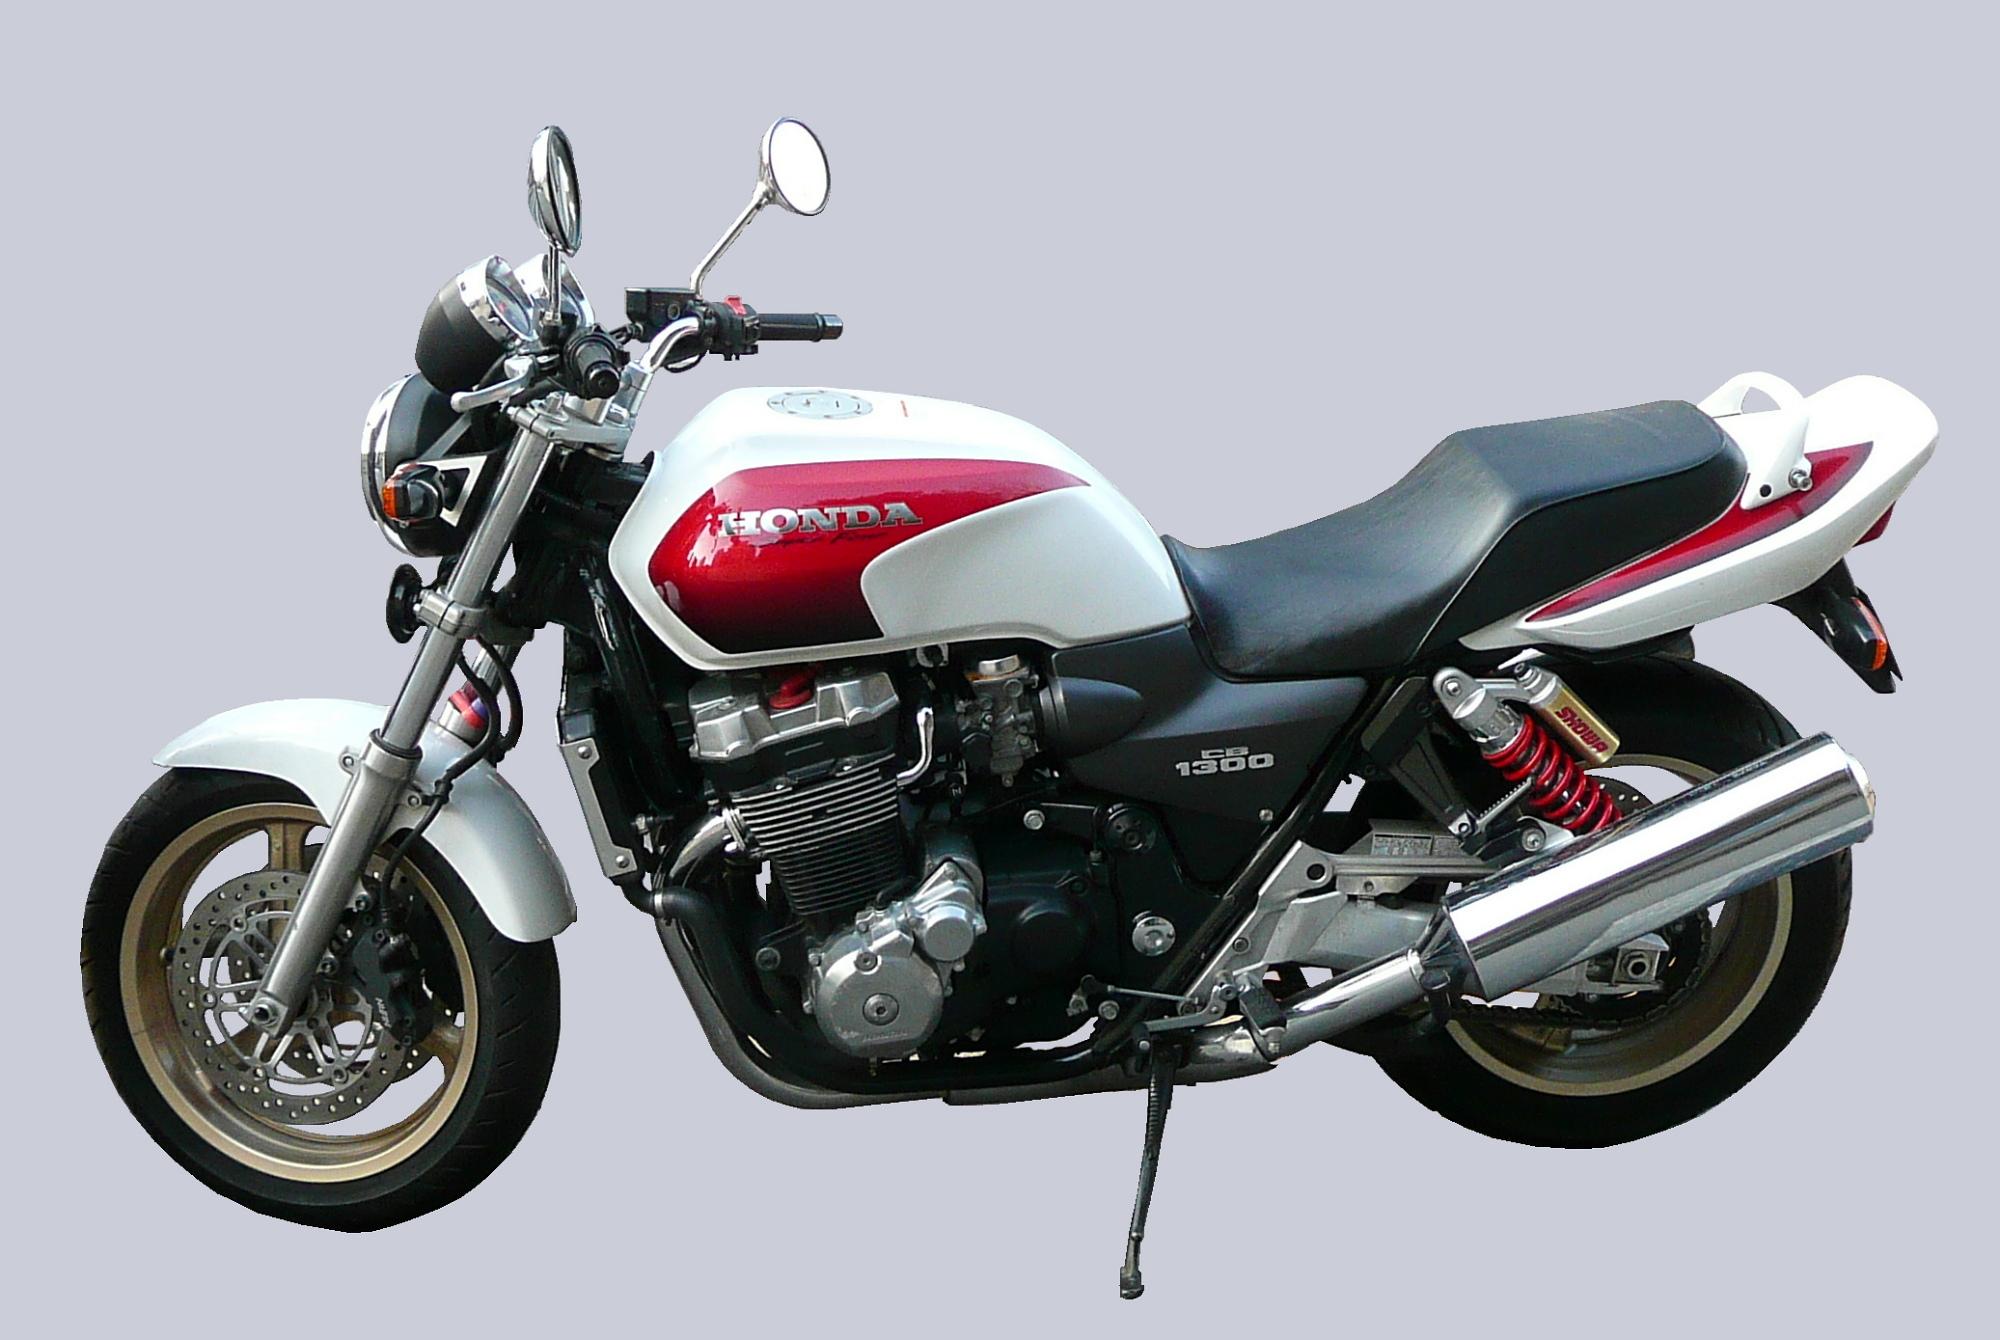 تصویر ساده و شیک موتور Honda CB1300 با دانلود رایگان 